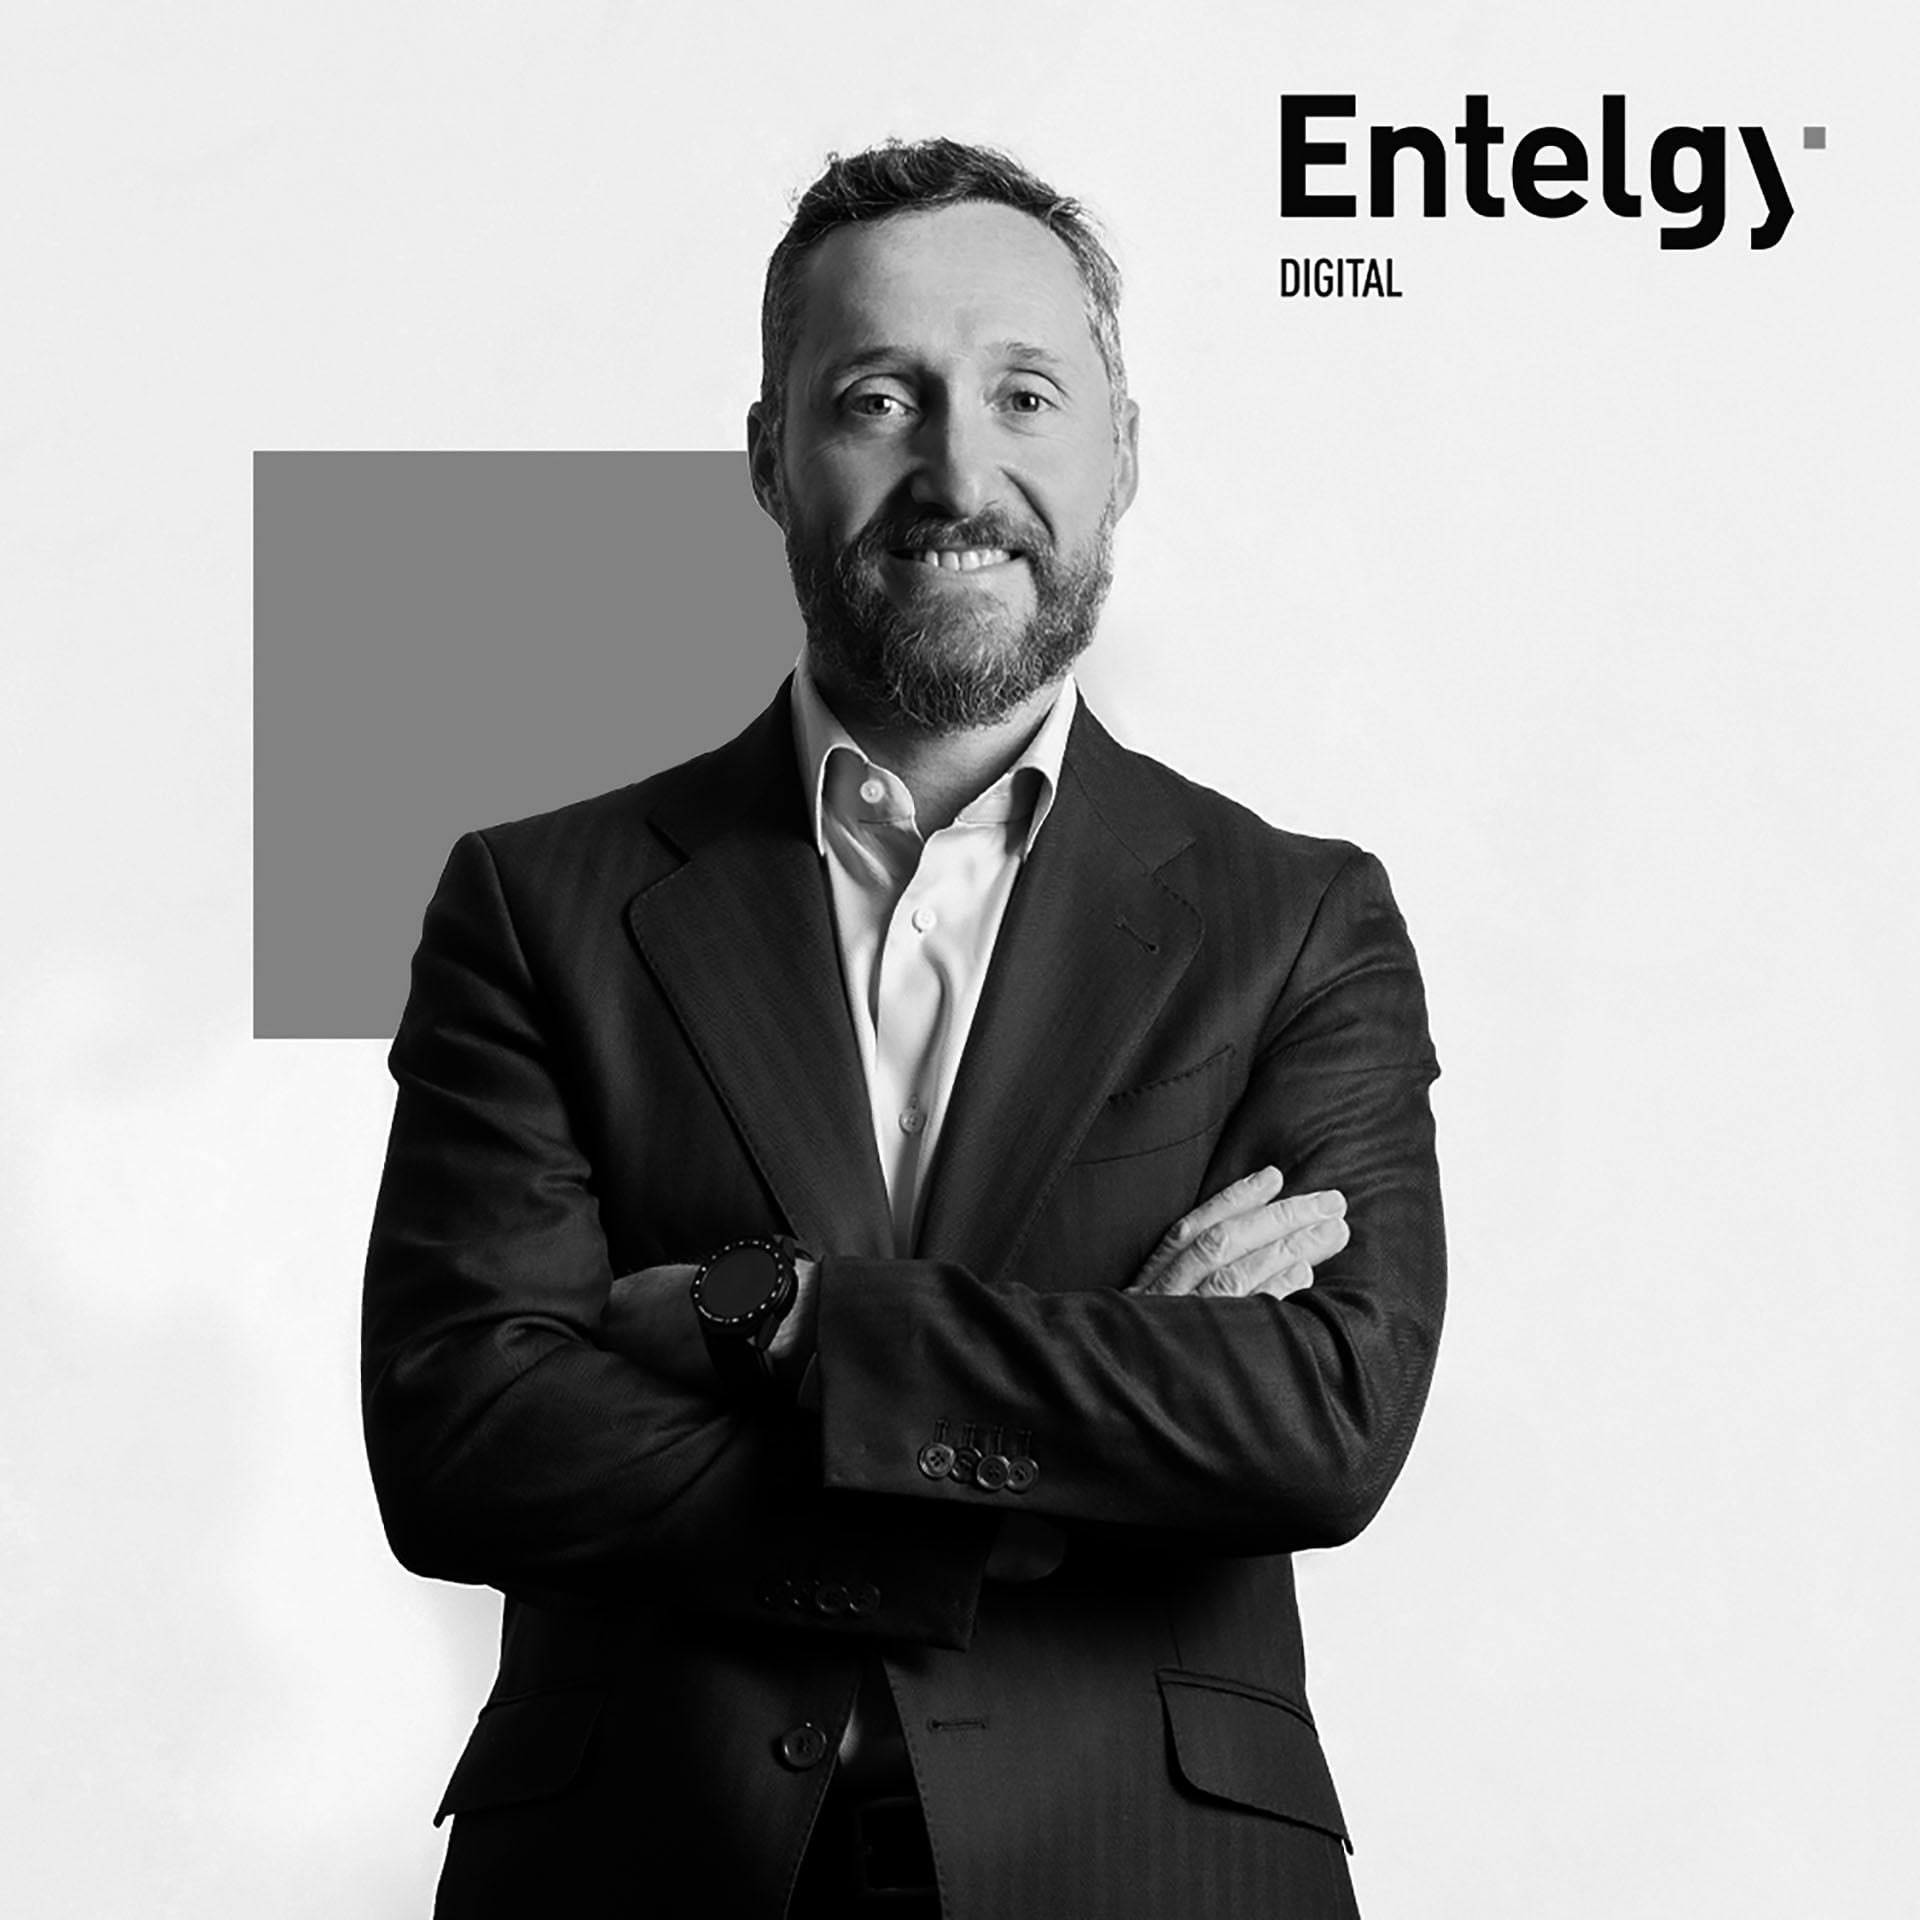 Miguel Ángel Barrio, Director de Entelgy Digital